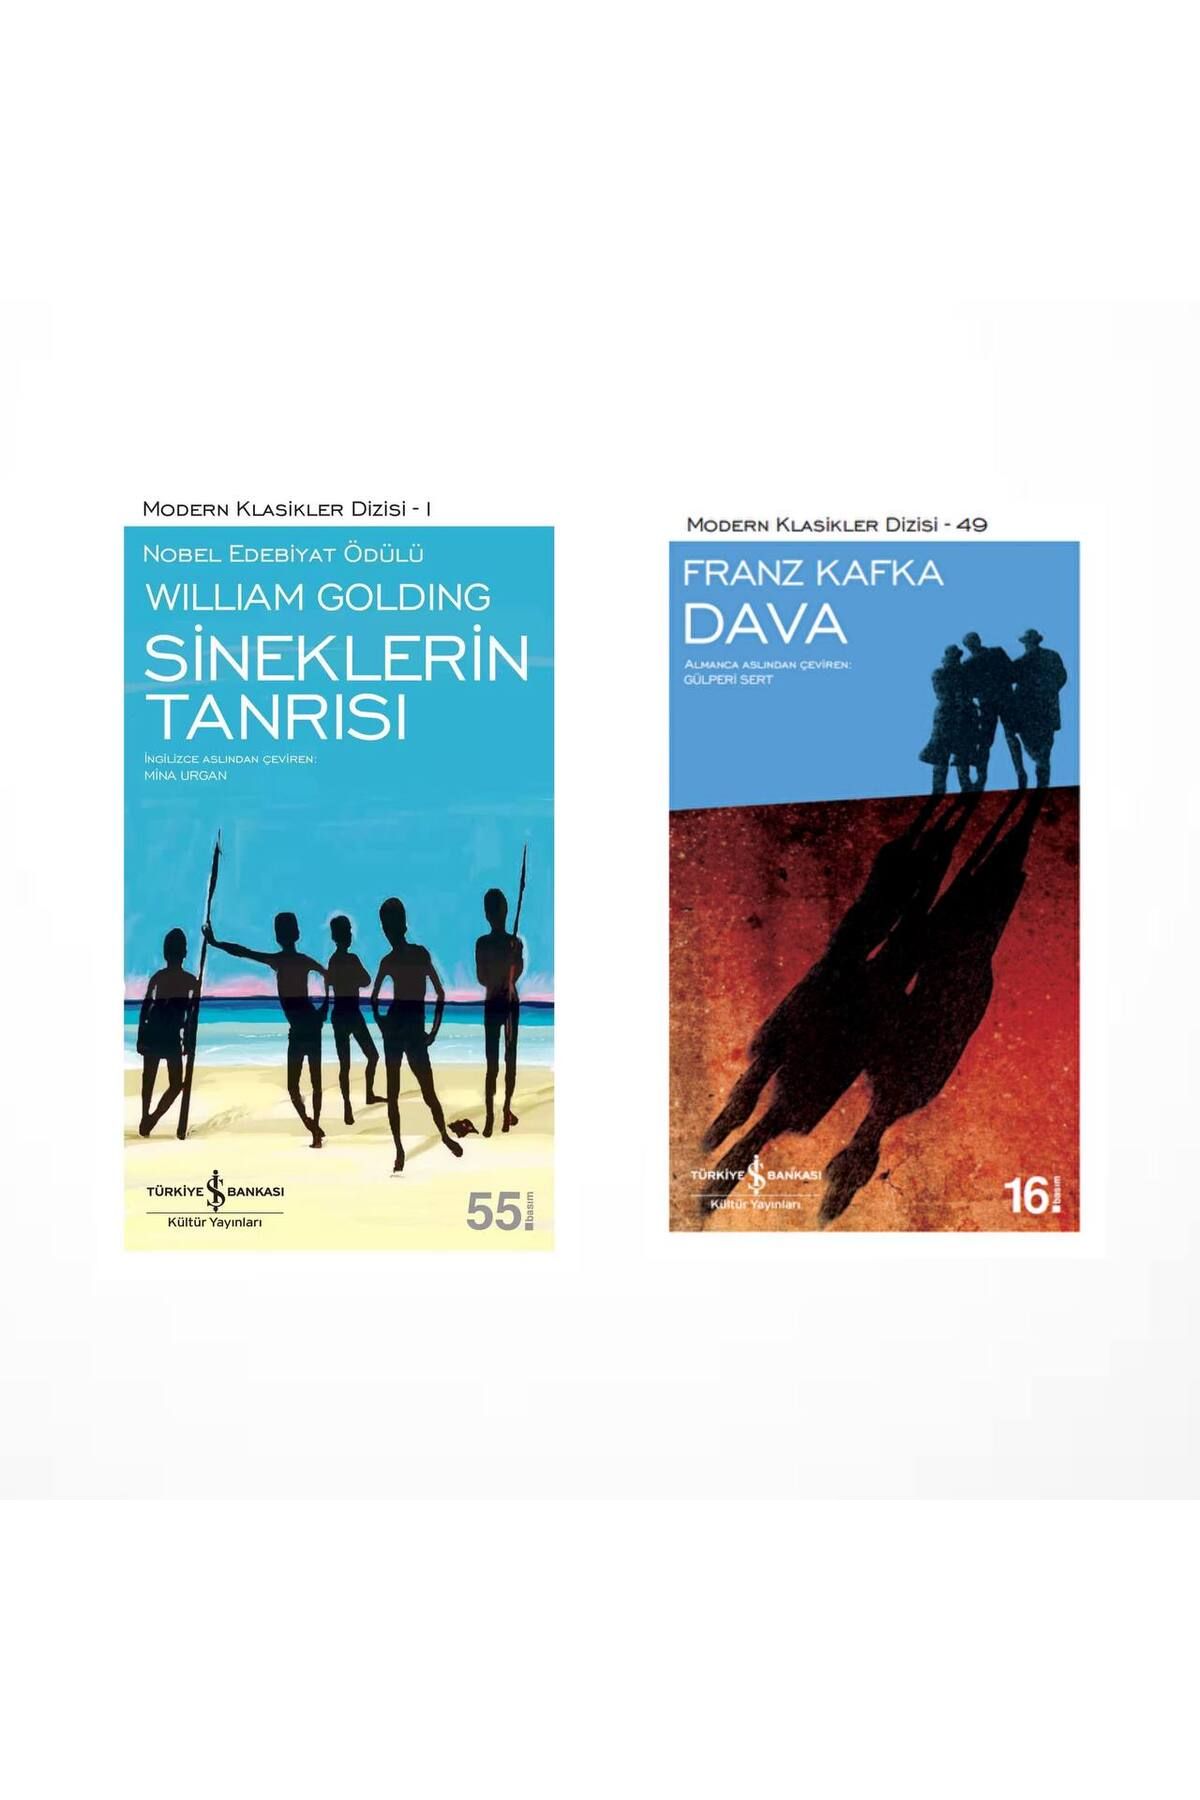 Türkiye İş Bankası Kültür Yayınları Sineklerin Tanrısı (William Golding) - Dava (Franz Kafka)